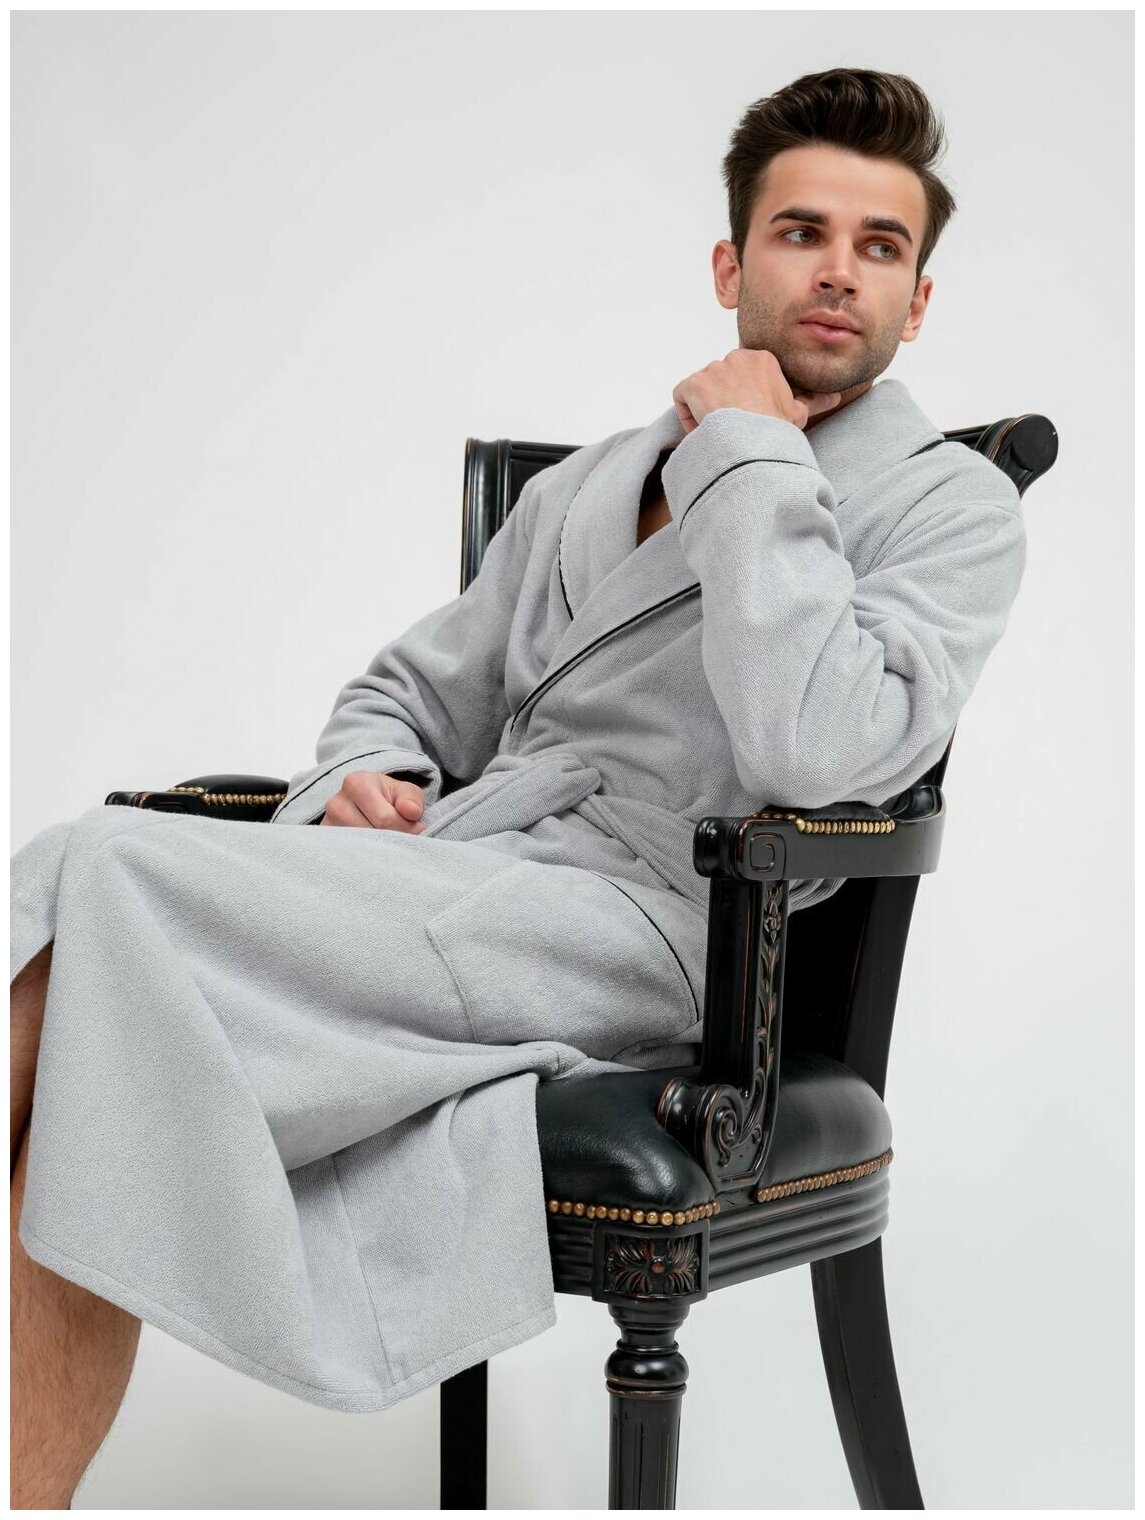 Мужской махровый халат с кантом, серебристый. Размер 46-48 - фотография № 1